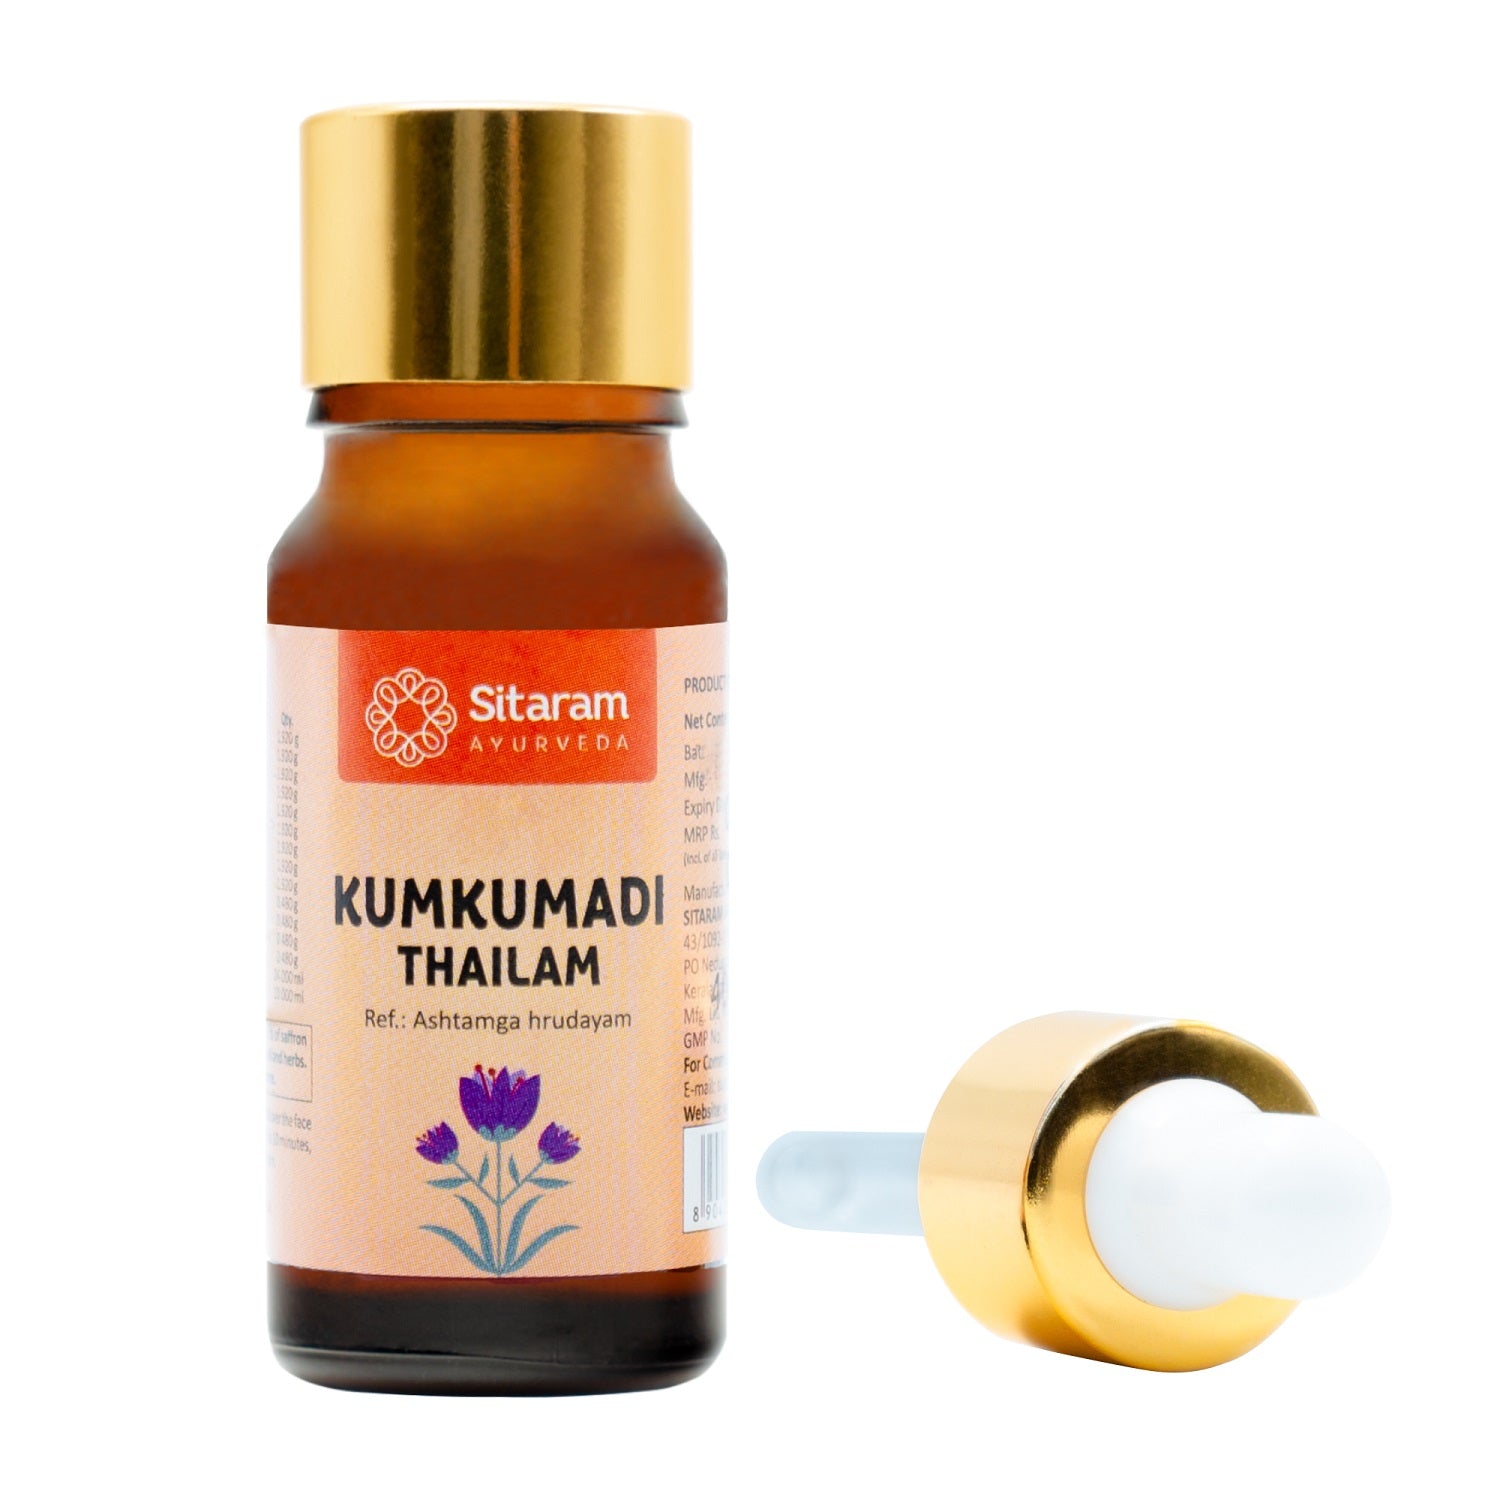 Sitaram Ayurveda Kumkumadi Thailam 10Ml (Prescription Medication)